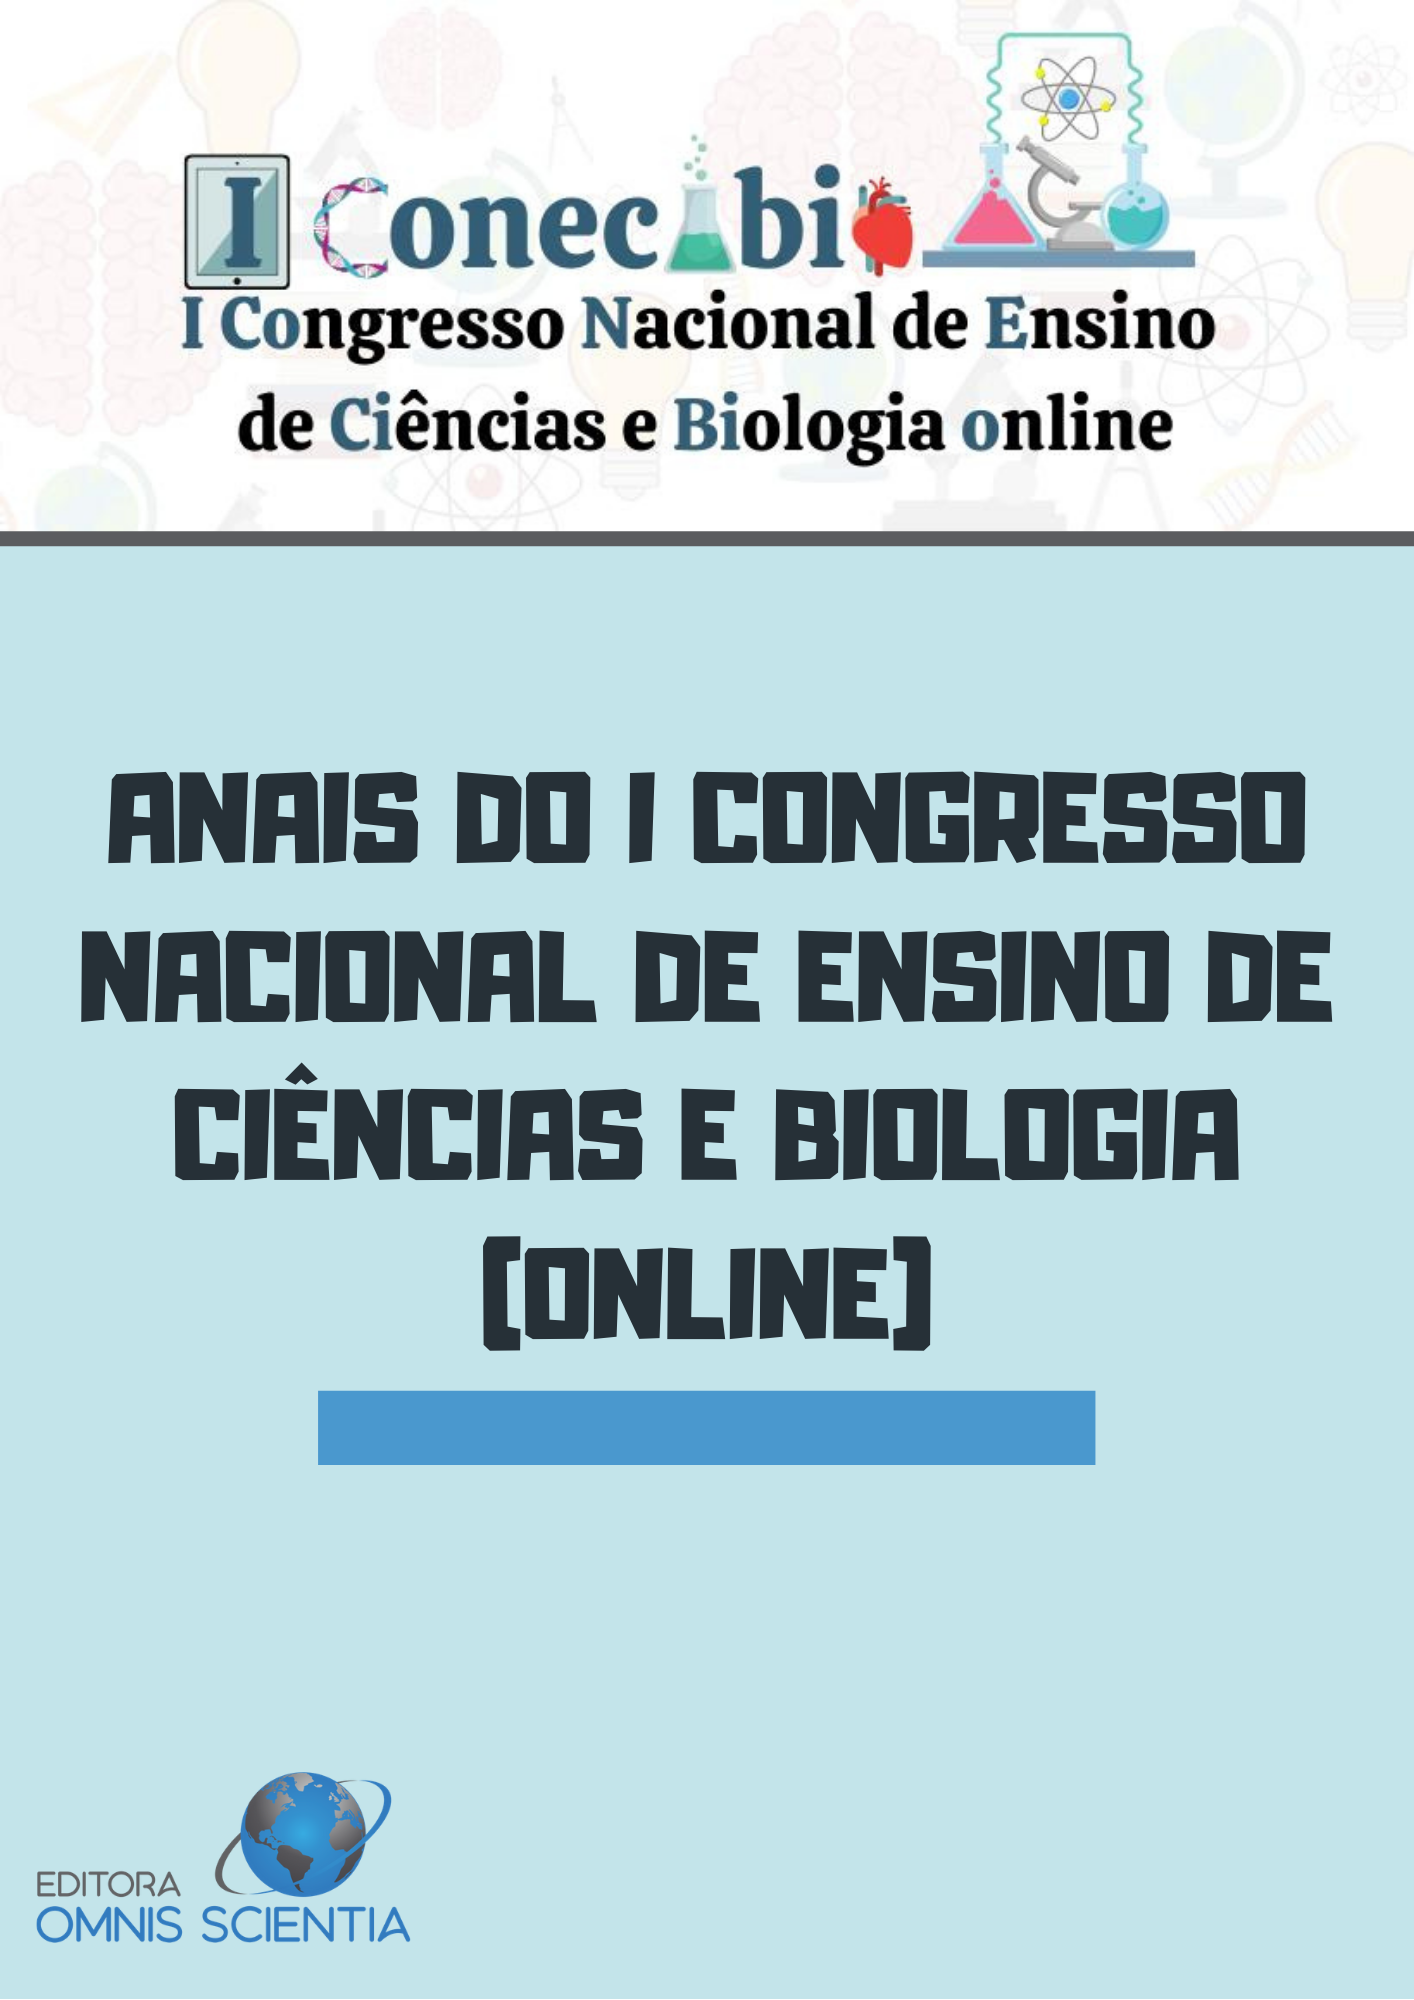 ANAIS DO I CONGRESSO NACIONAL DE ENSINO DE CIÊNCIAS E BIOLOGIA